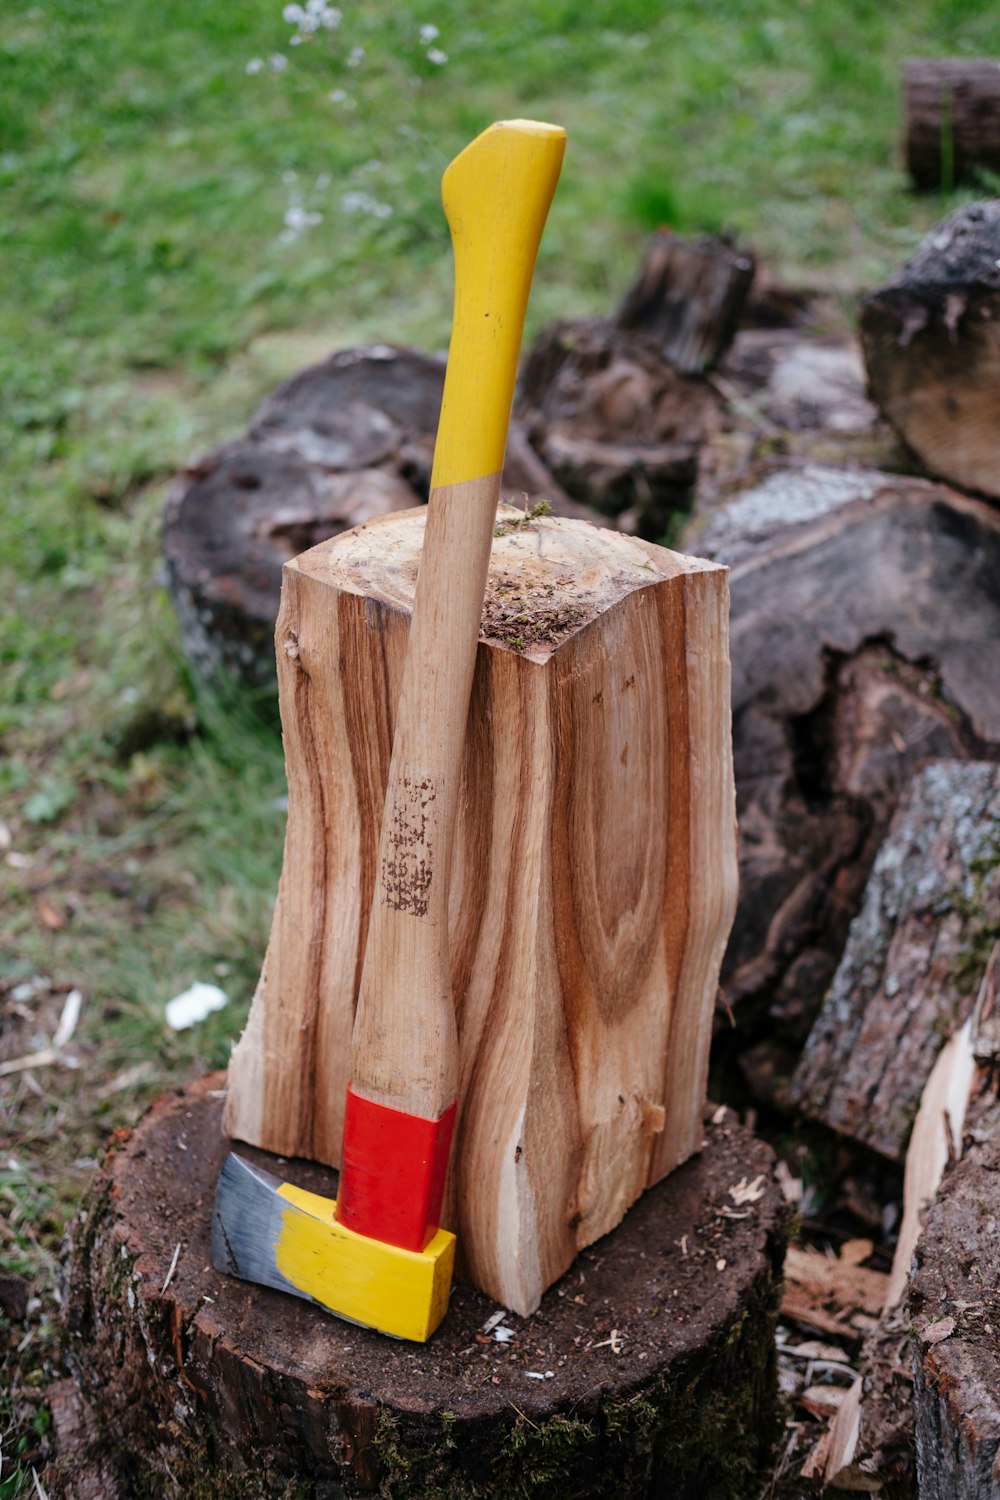 a wooden shovel in a stump